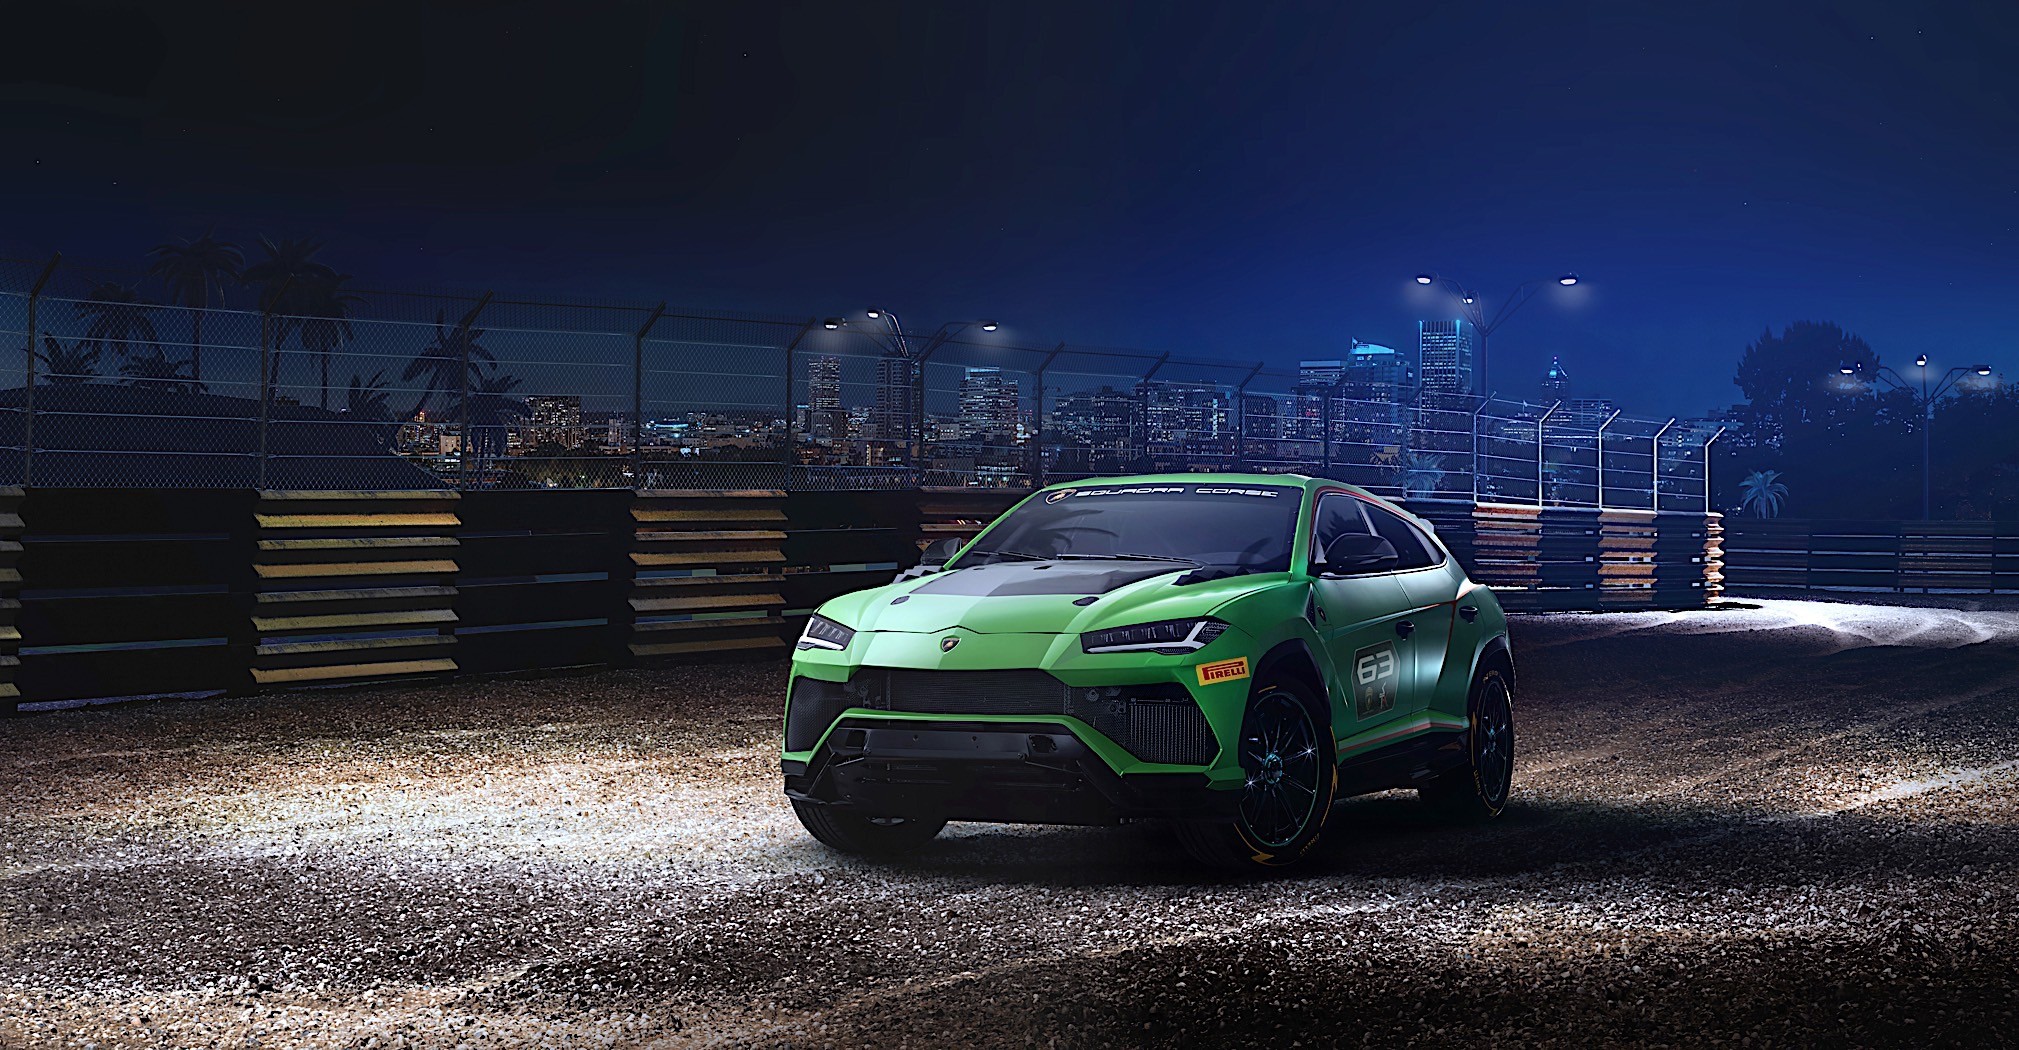 Lamborghini Urus ST-X Concept is a road course dominating SUV